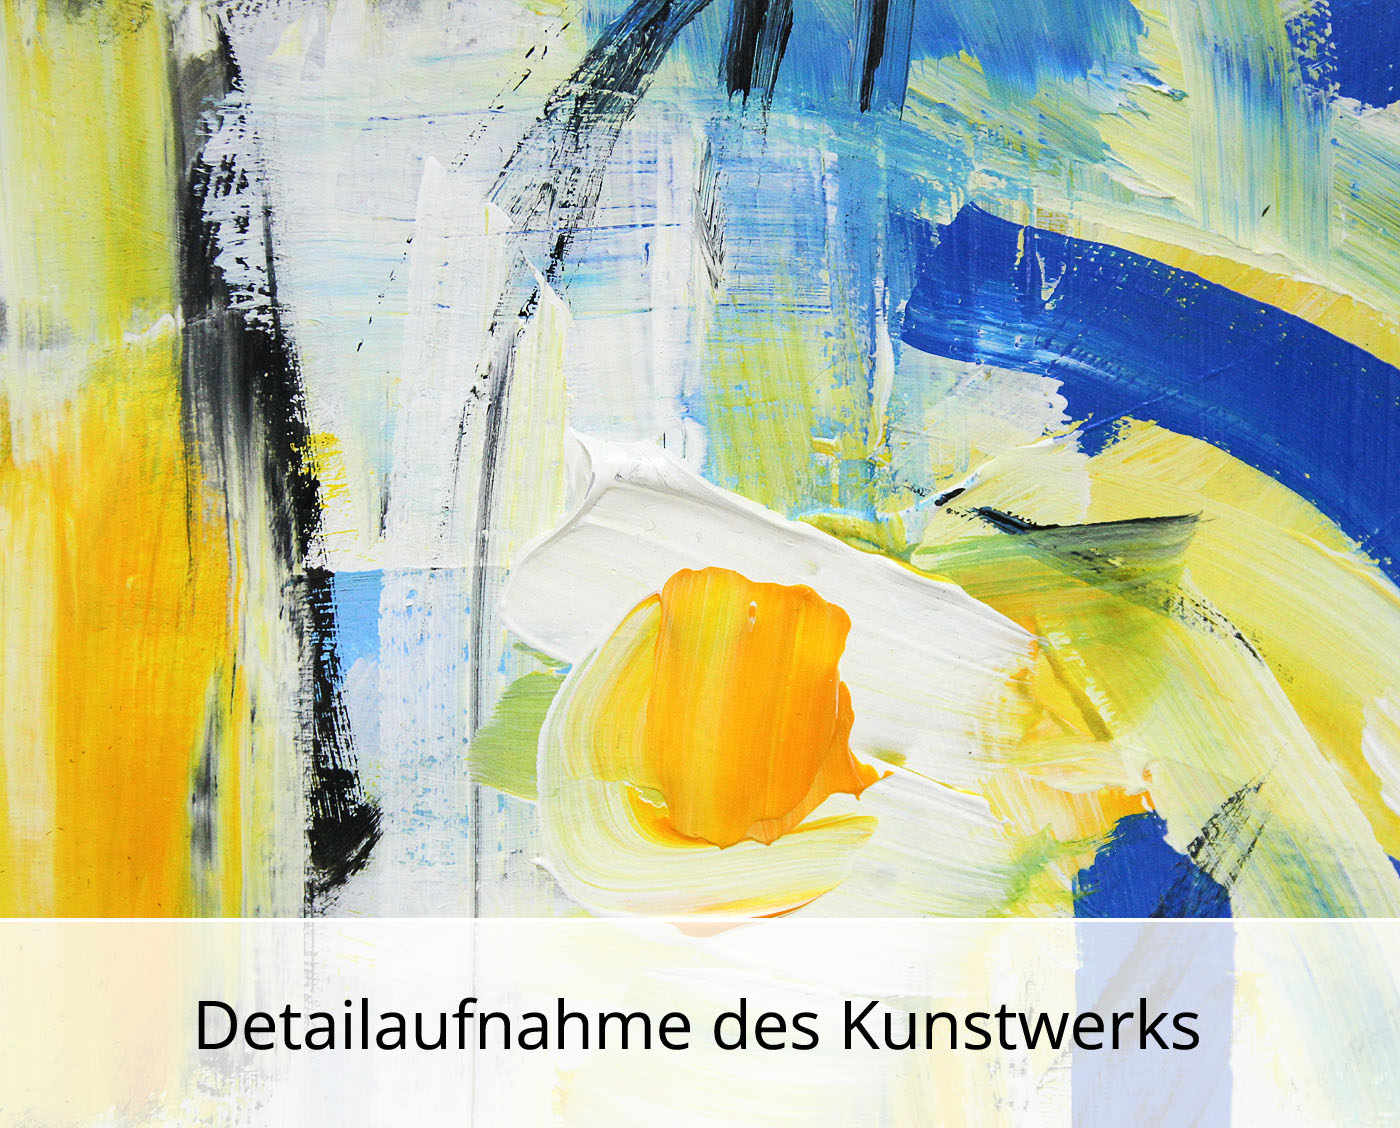 M. Cieśla: "Studium der Abstraktion 76 blauer und oranger Natur", Original/Unikat, Mischtechnik